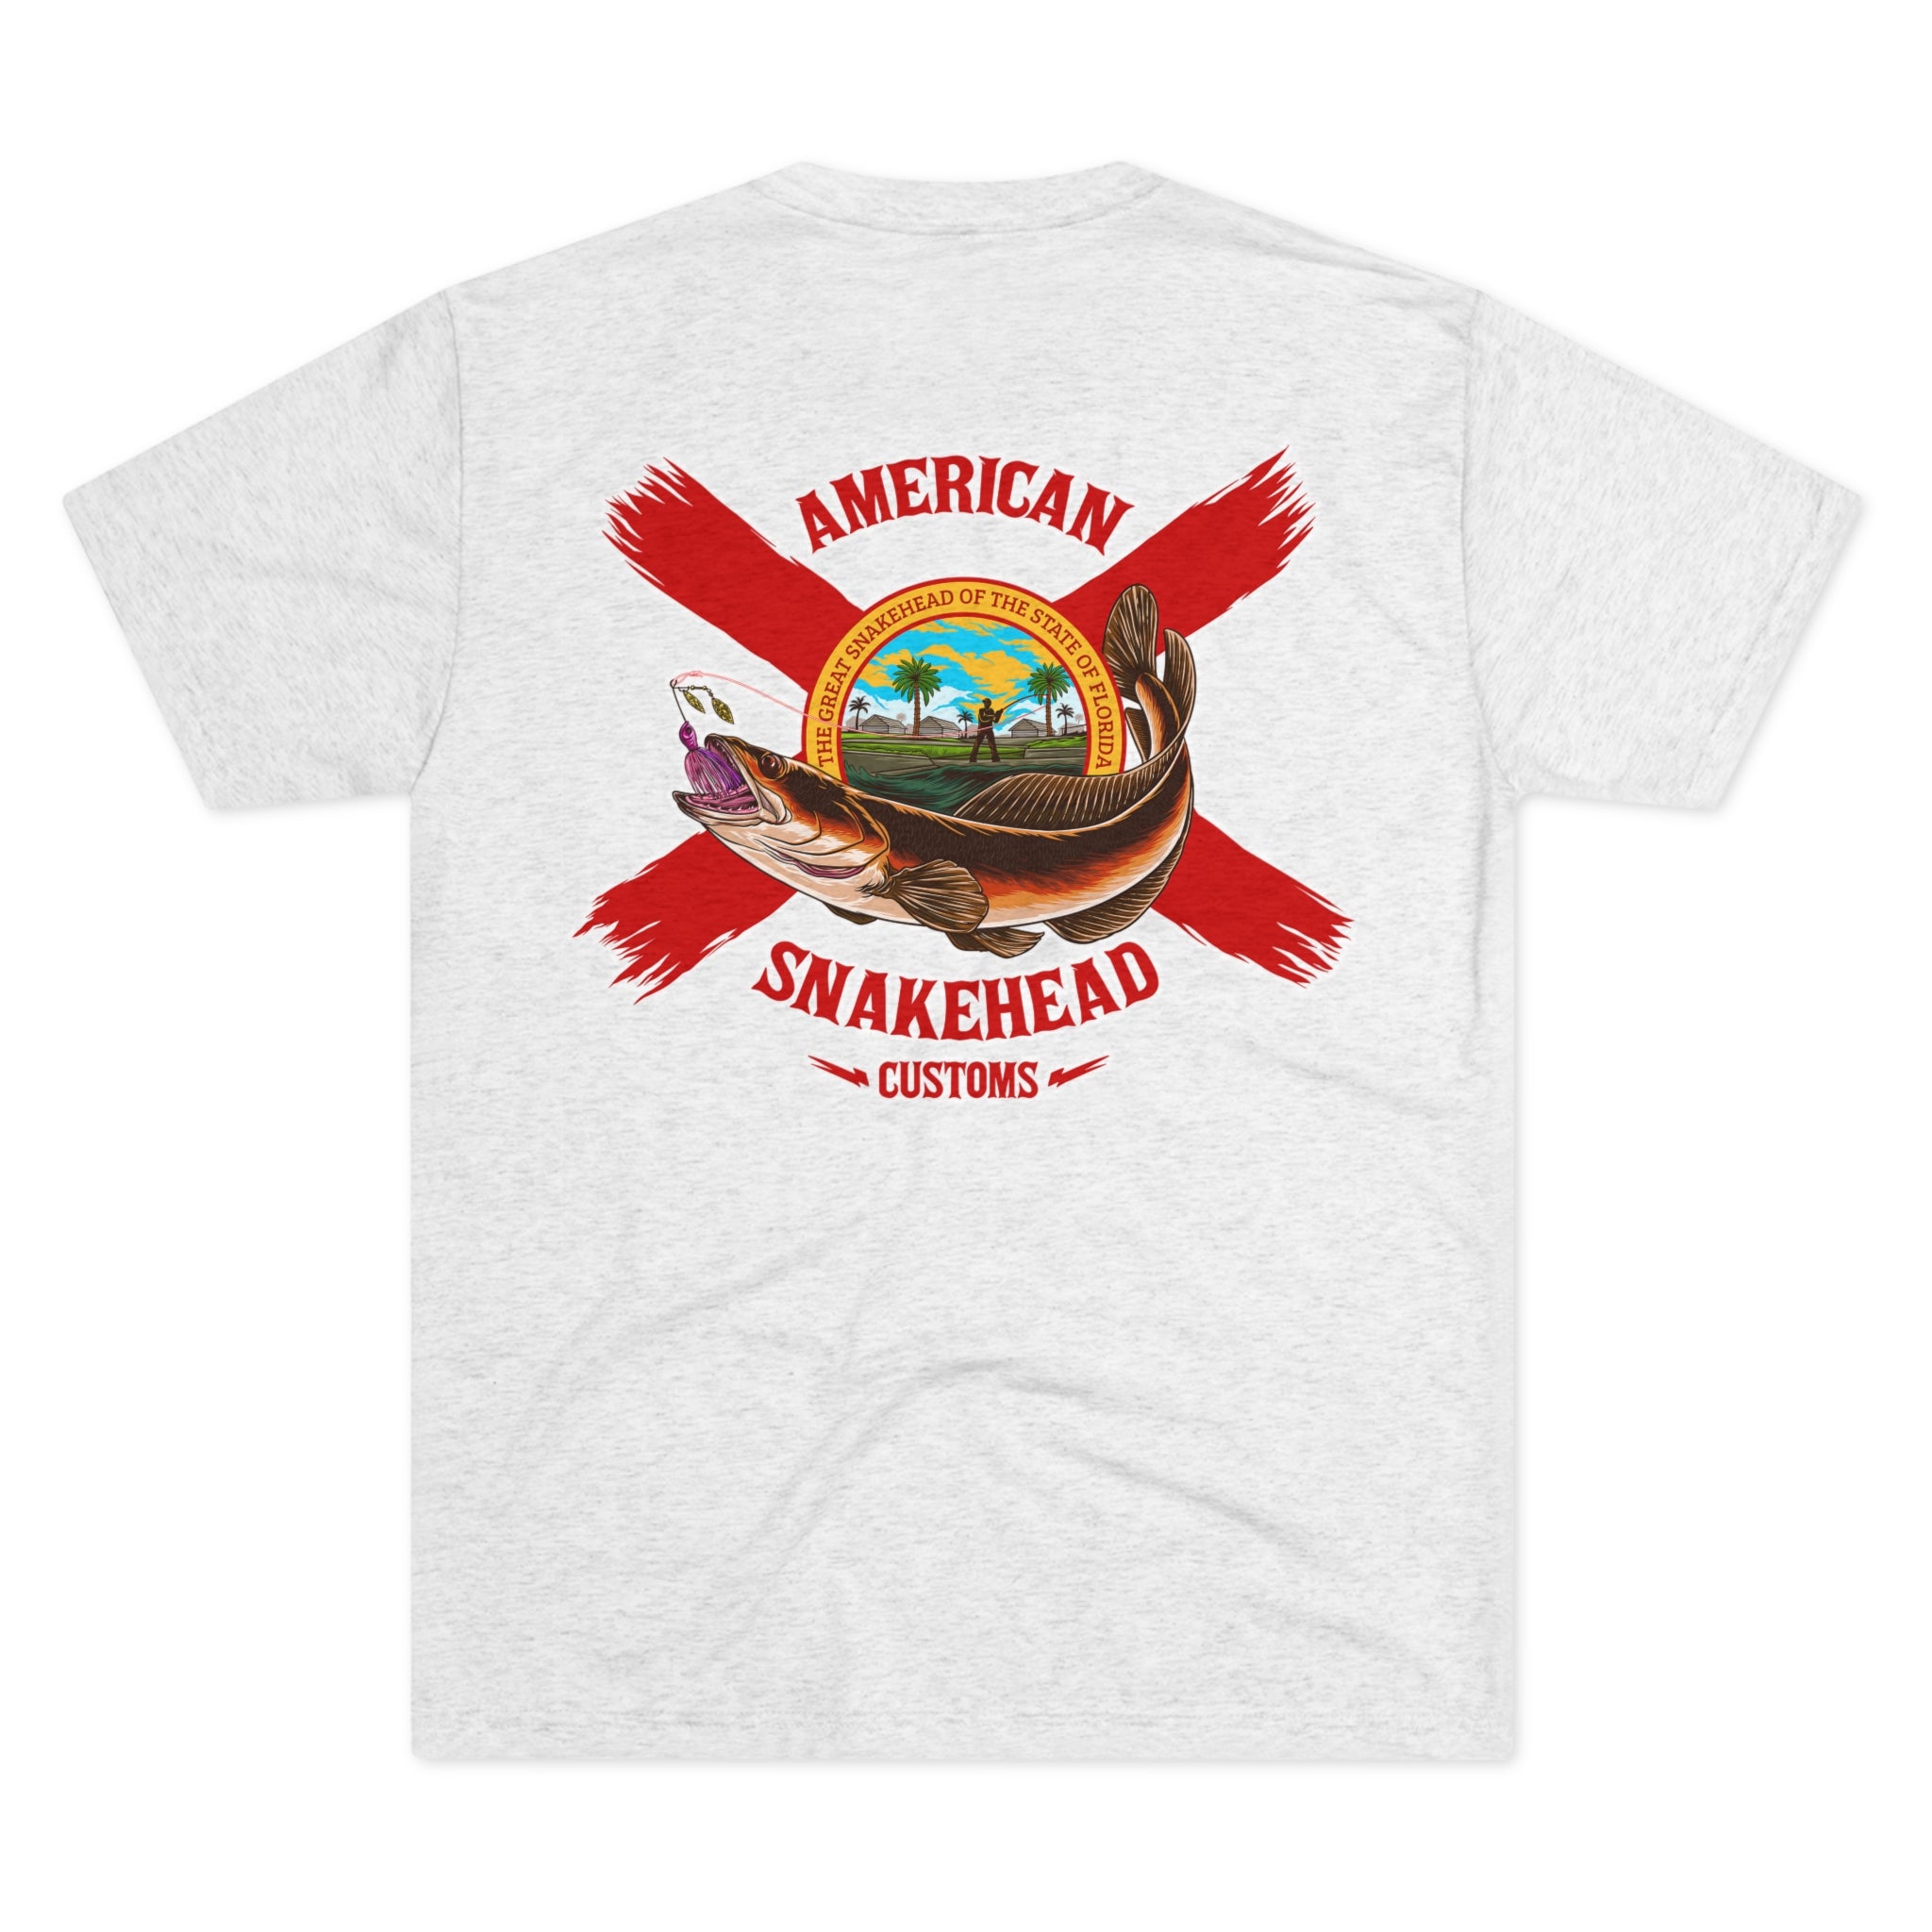 ASC Florida Snakehead Premium Crew T-Shirt